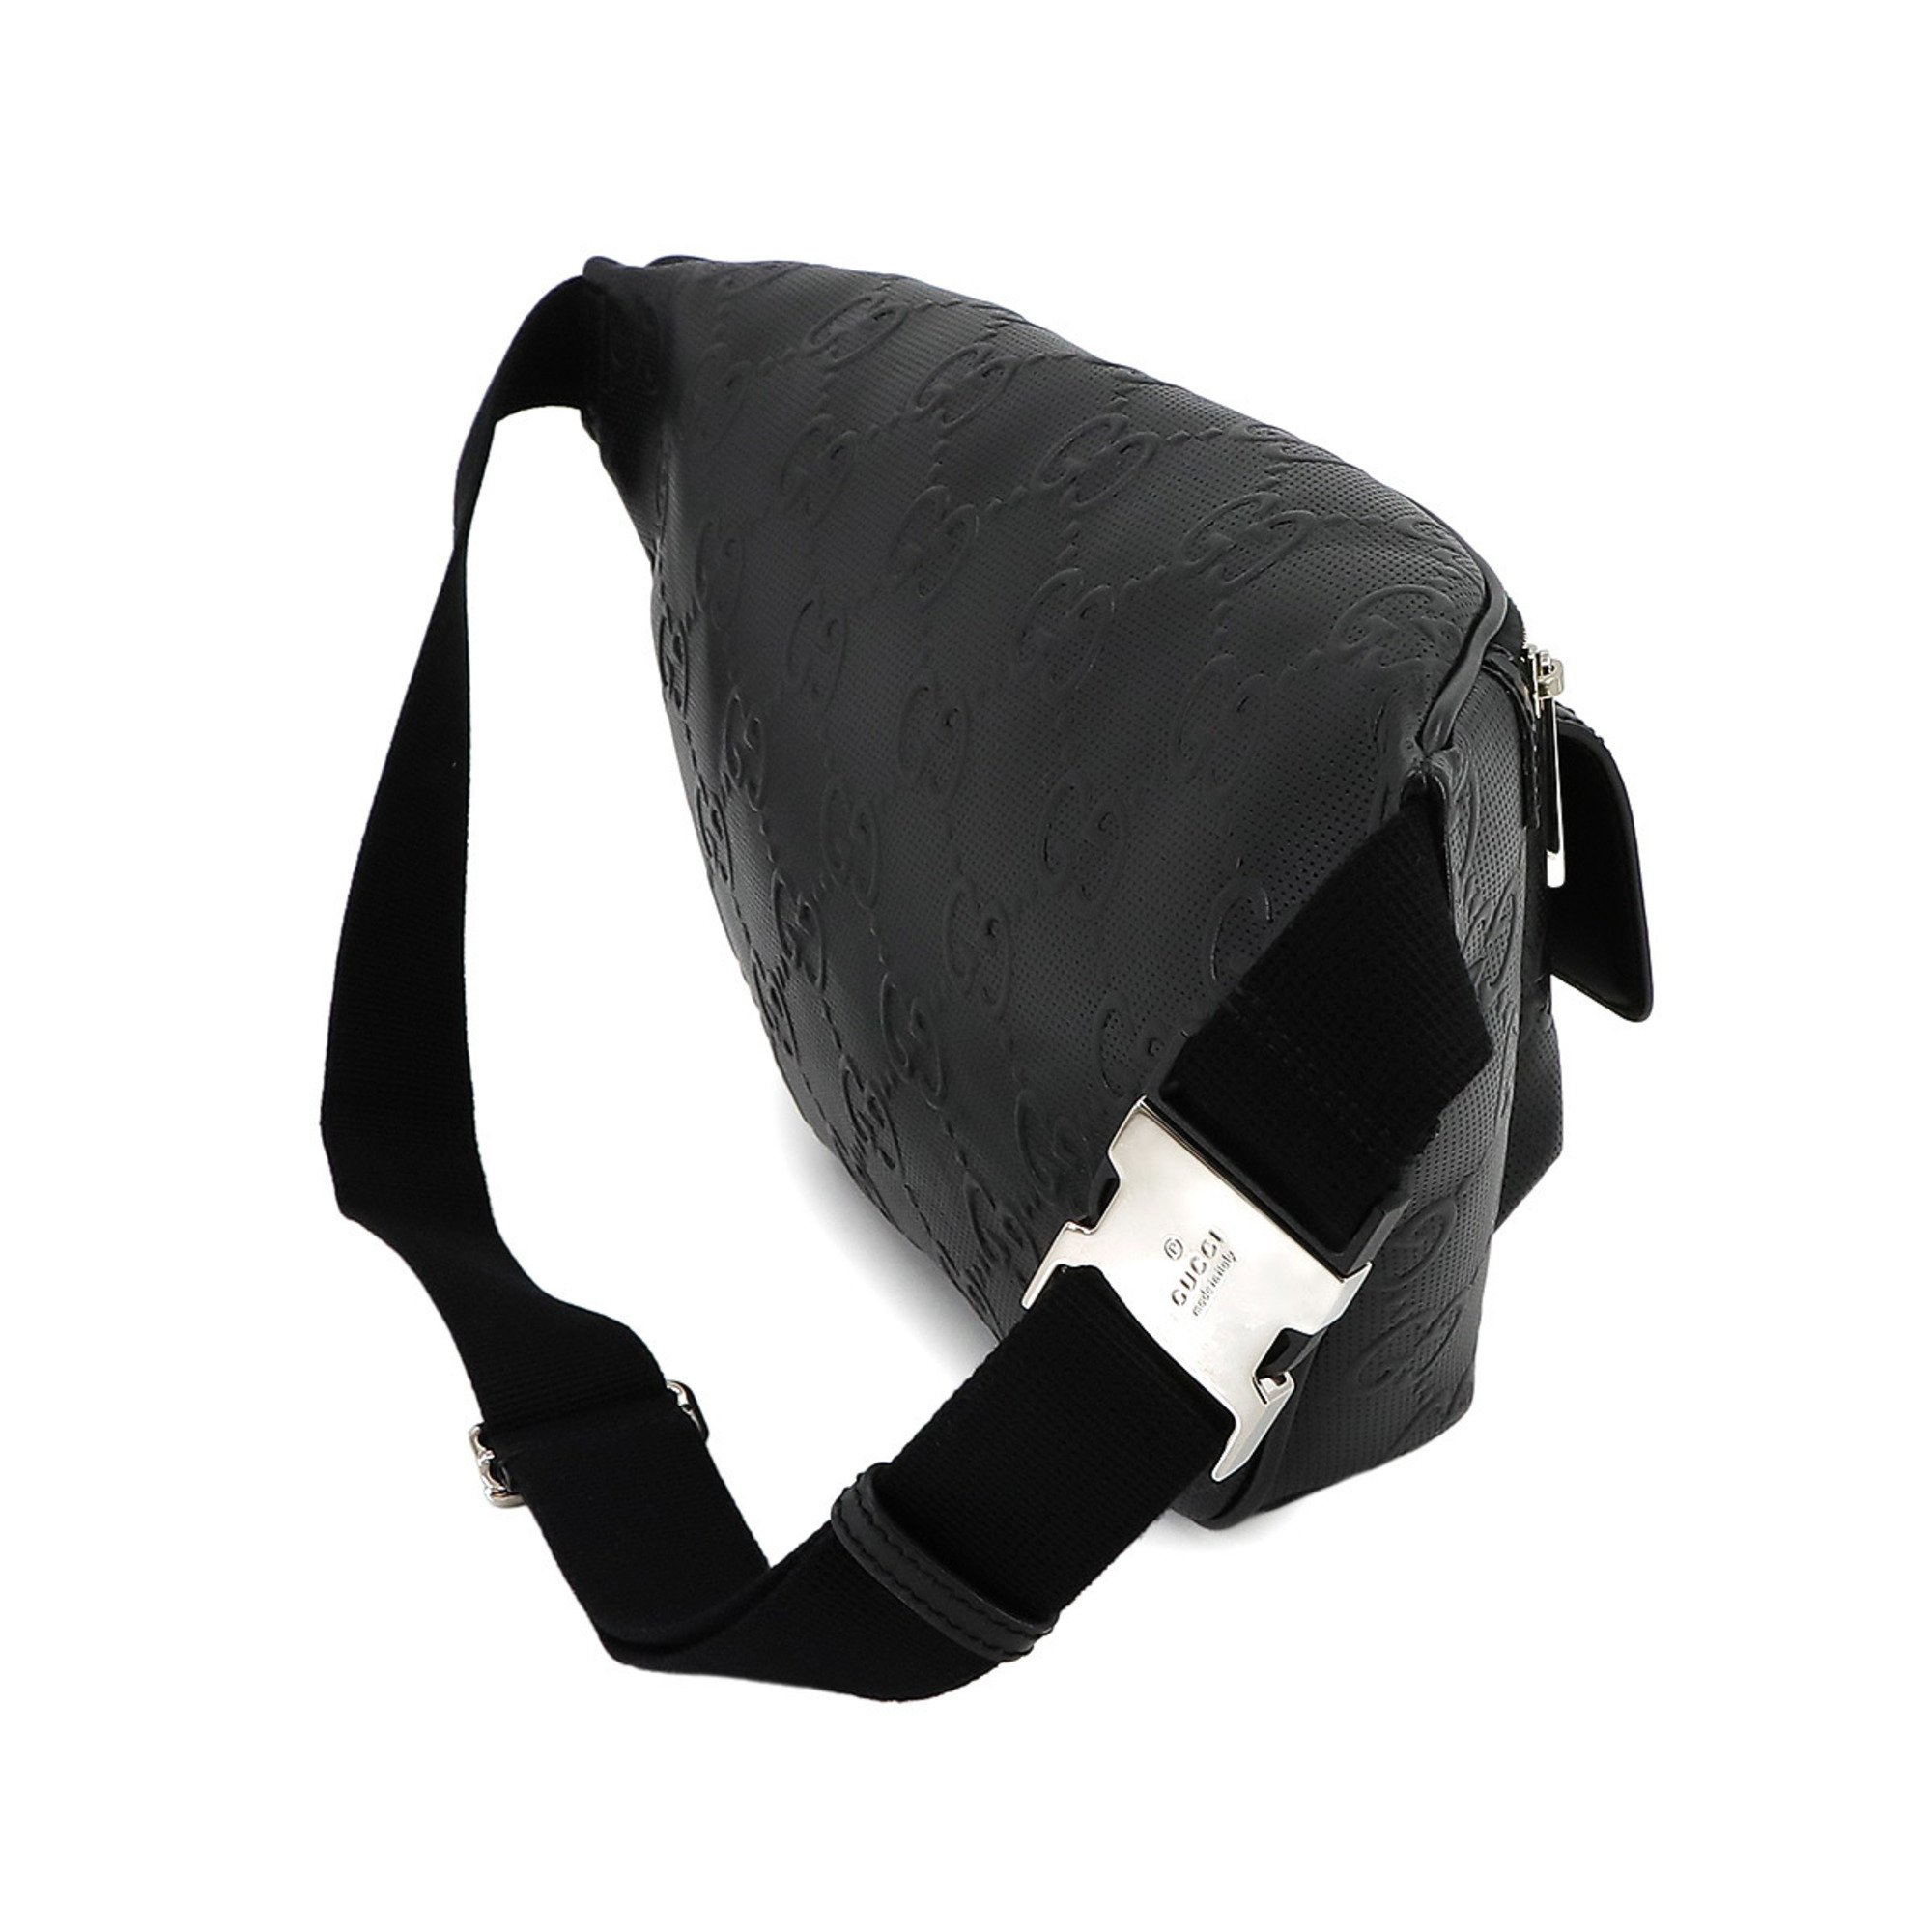 GUCCI GG embossed belt bag, body leather, black, 645093, silver hardware, Embossed Belt Bag